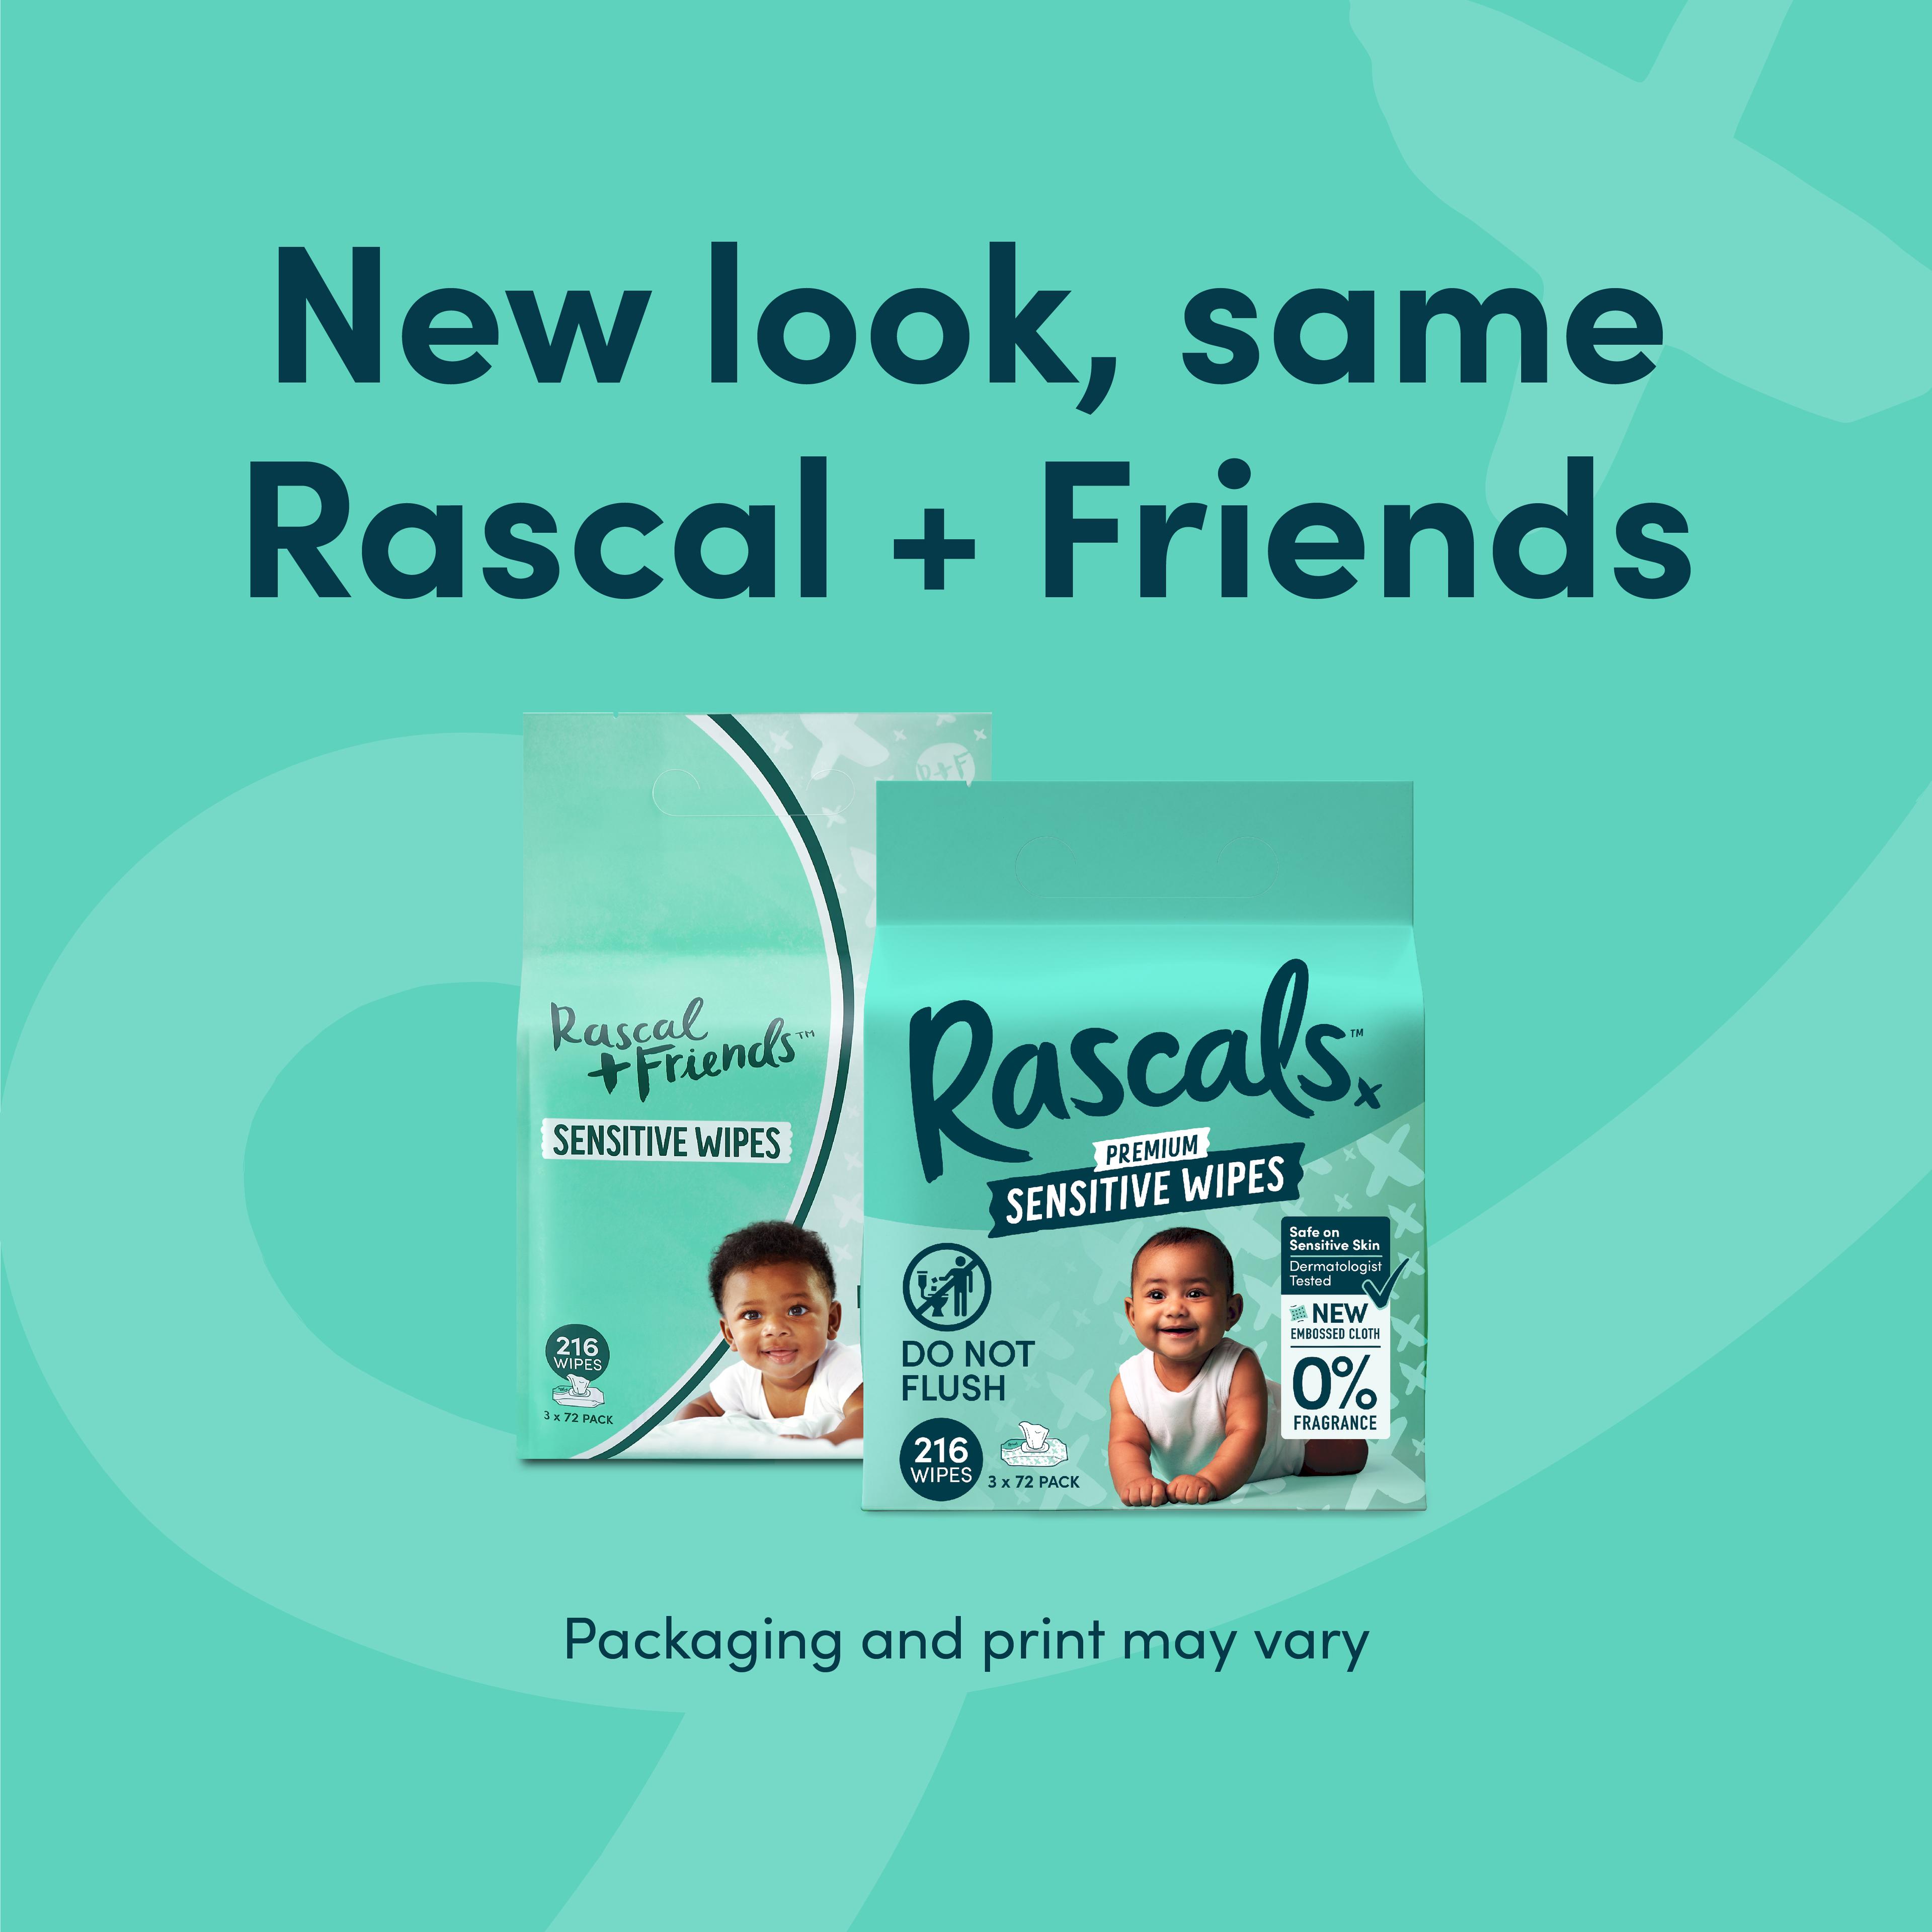 New look, same Rascal + Friends